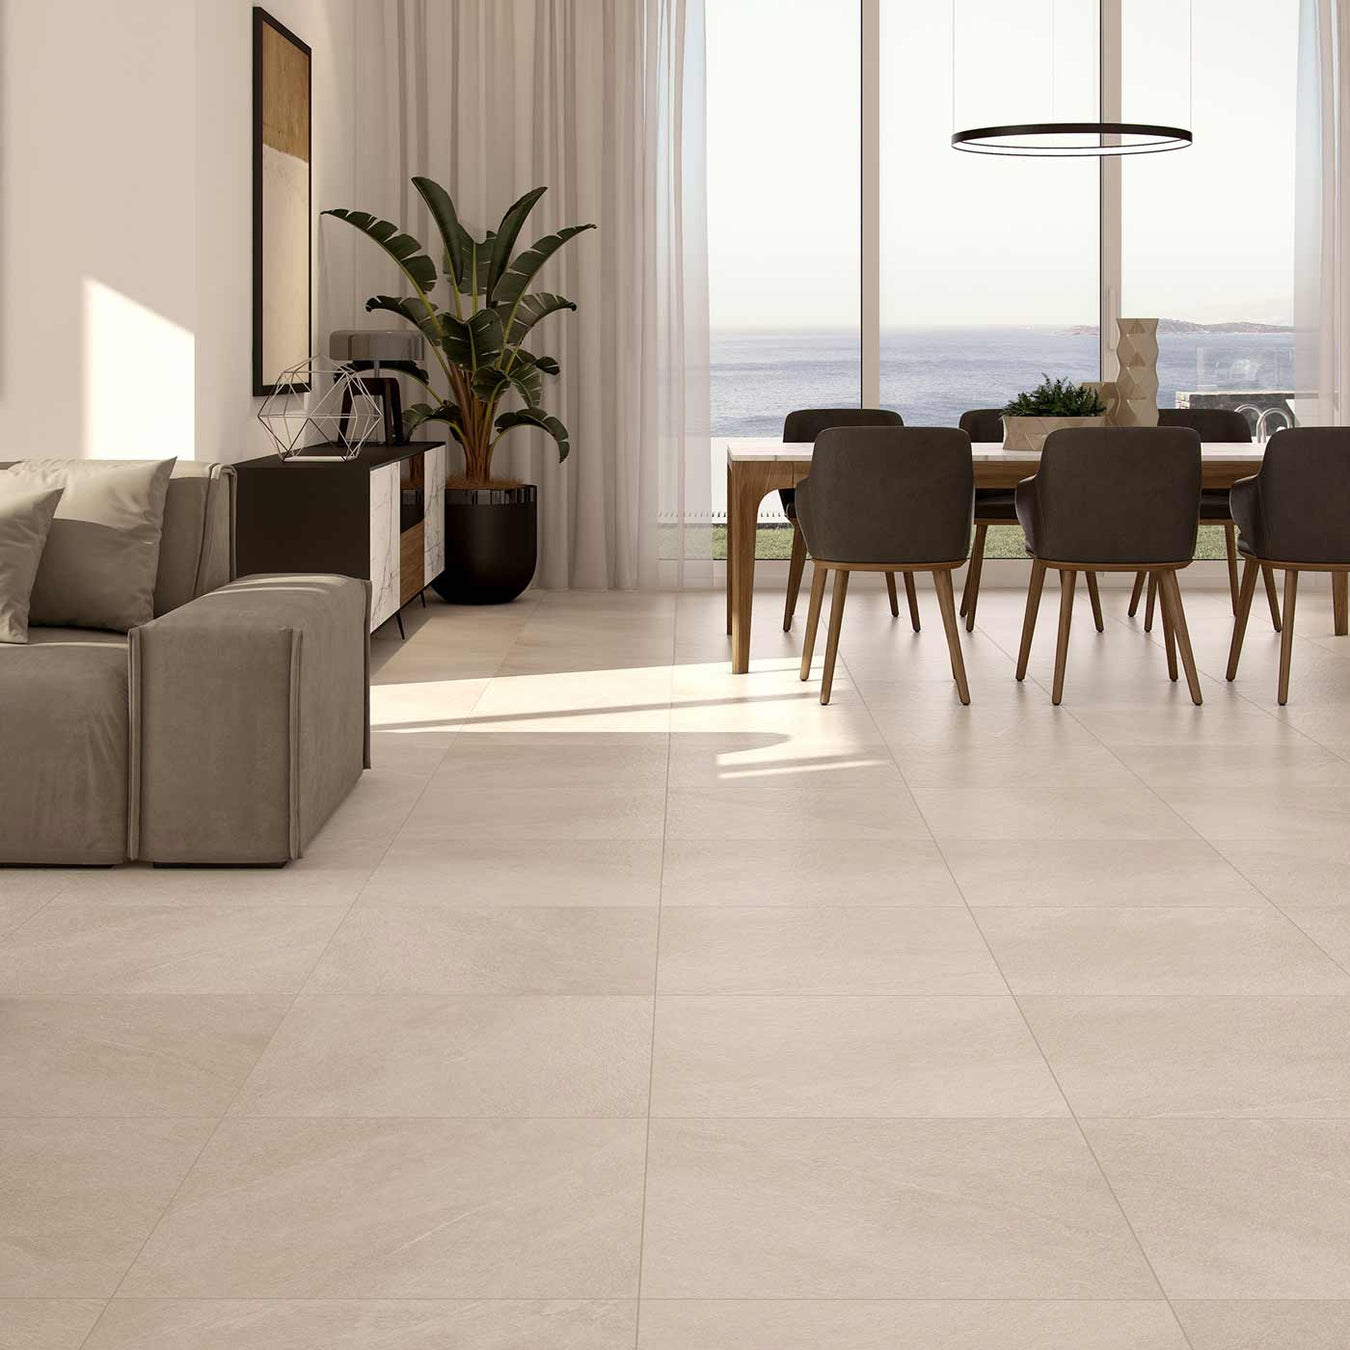 Cream floor tiles